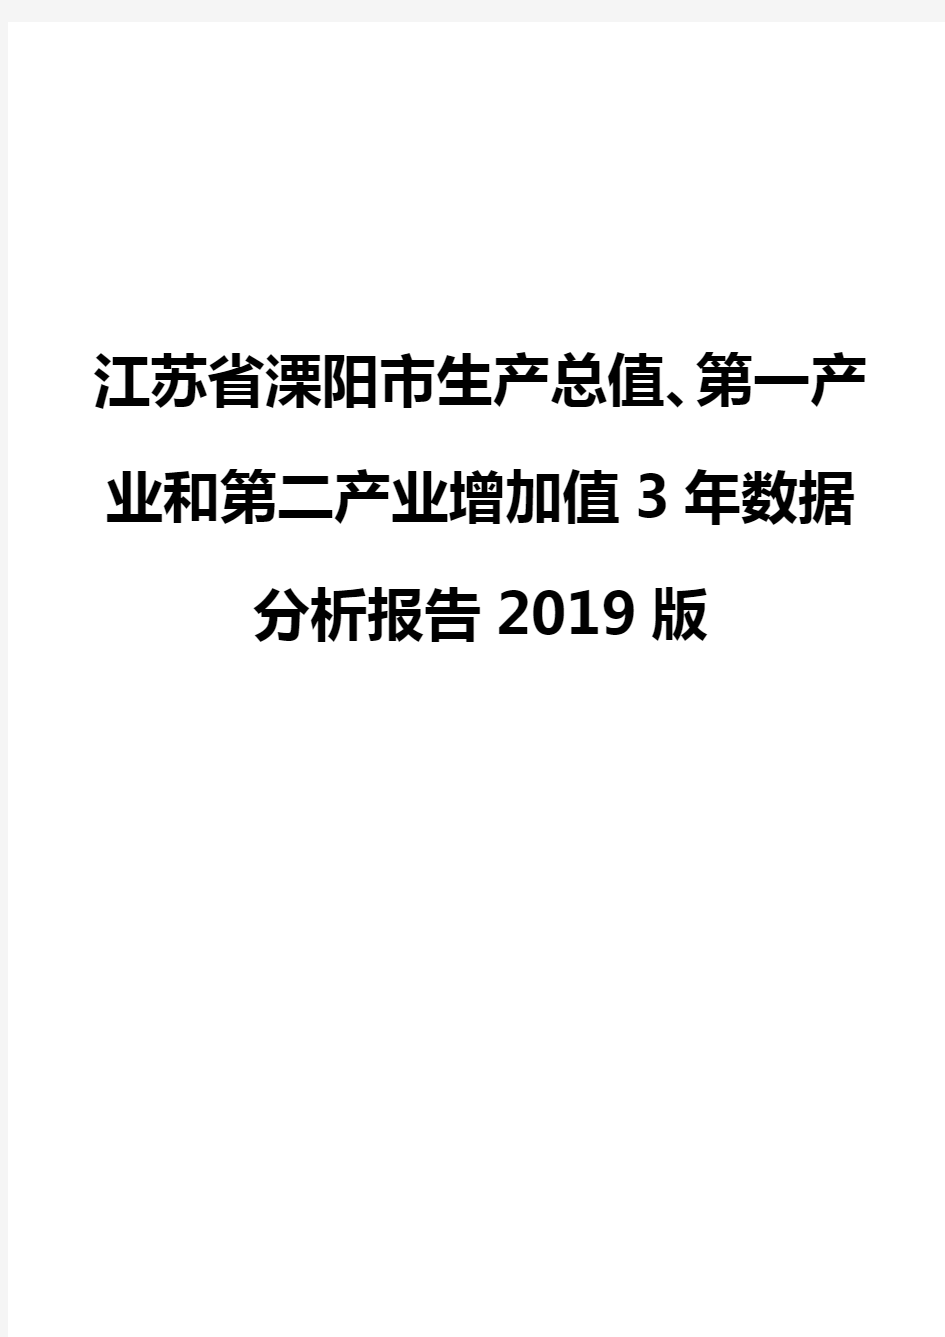 江苏省溧阳市生产总值、第一产业和第二产业增加值3年数据分析报告2019版